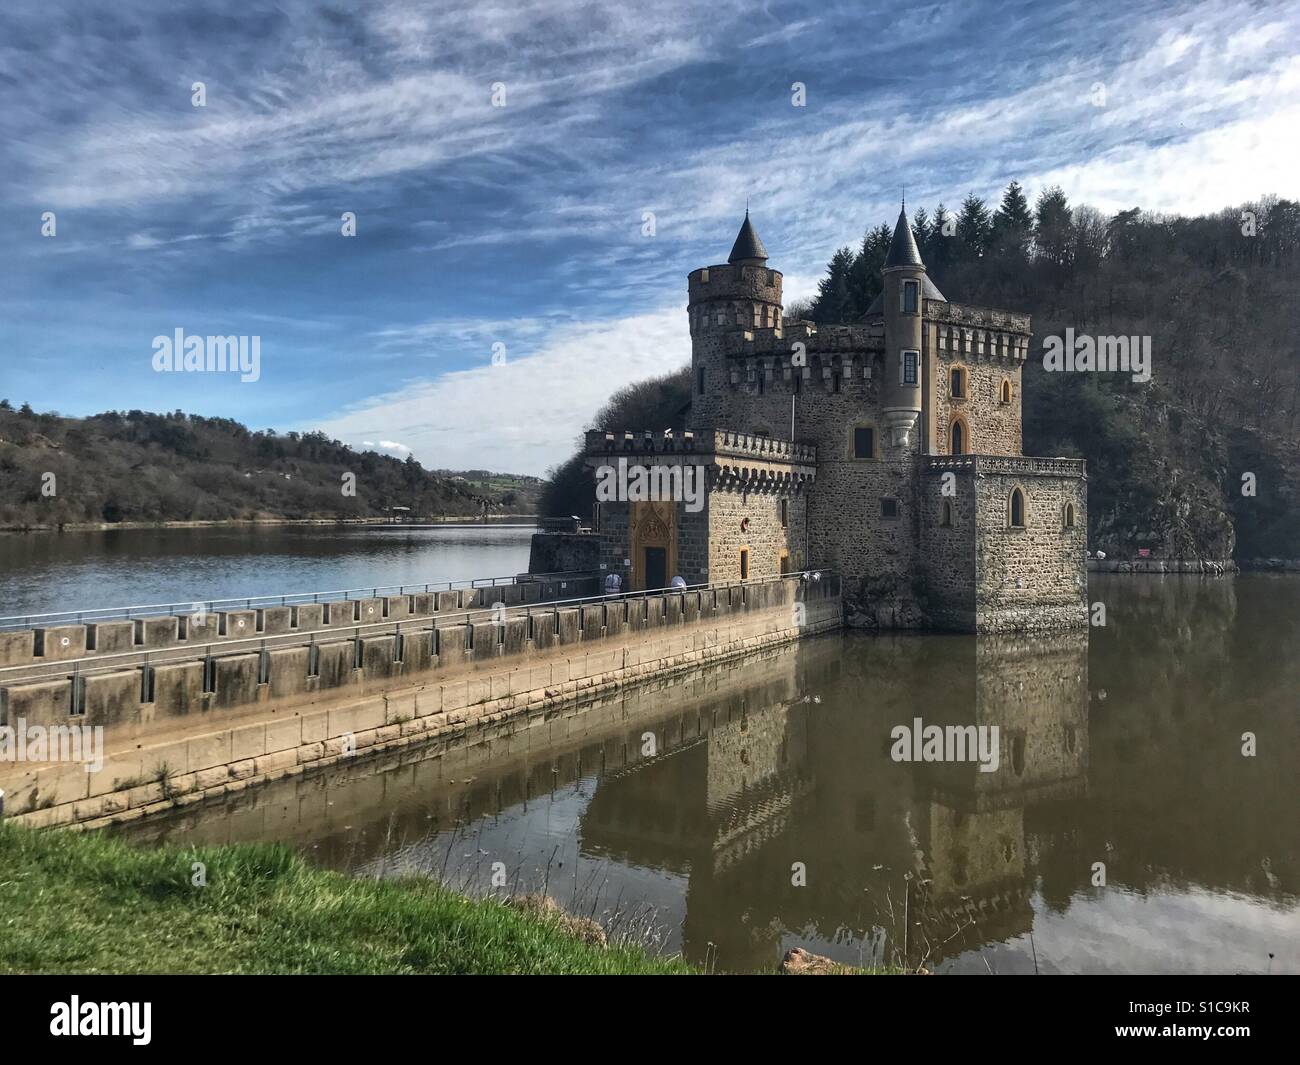 Chateau de la Roche Loire river France Stock Photo